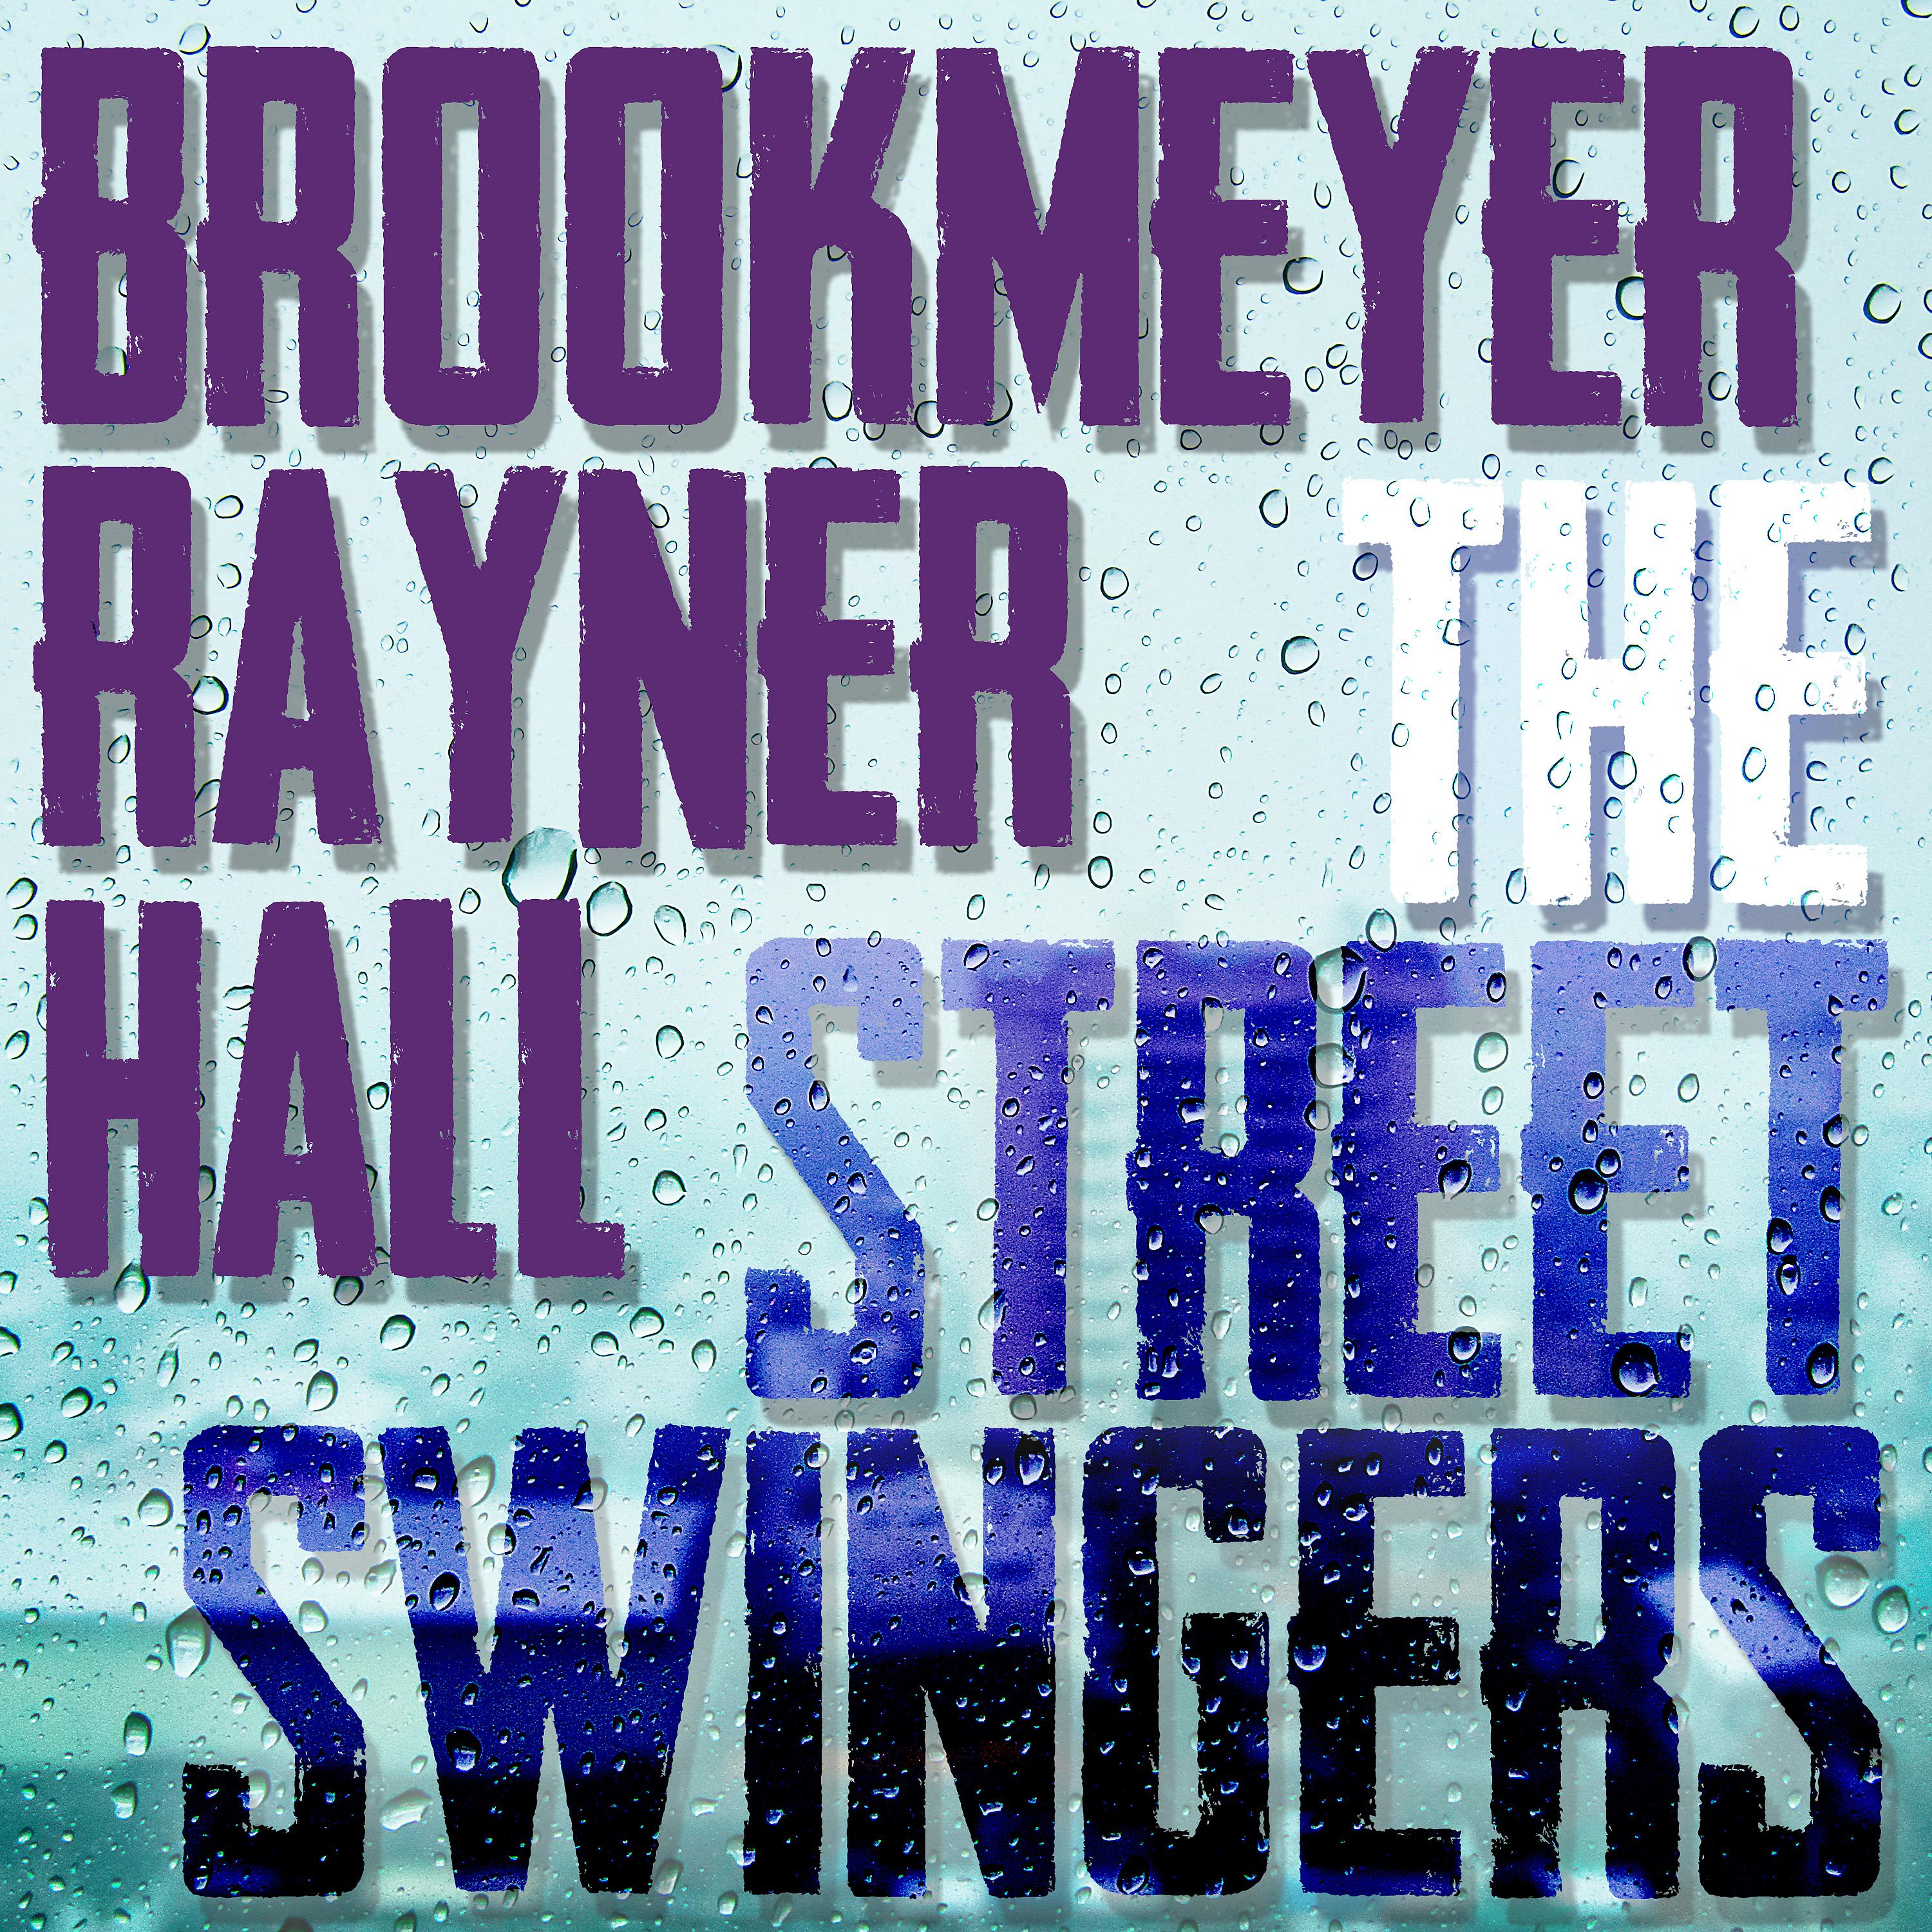 Постер альбома The Street Swingers